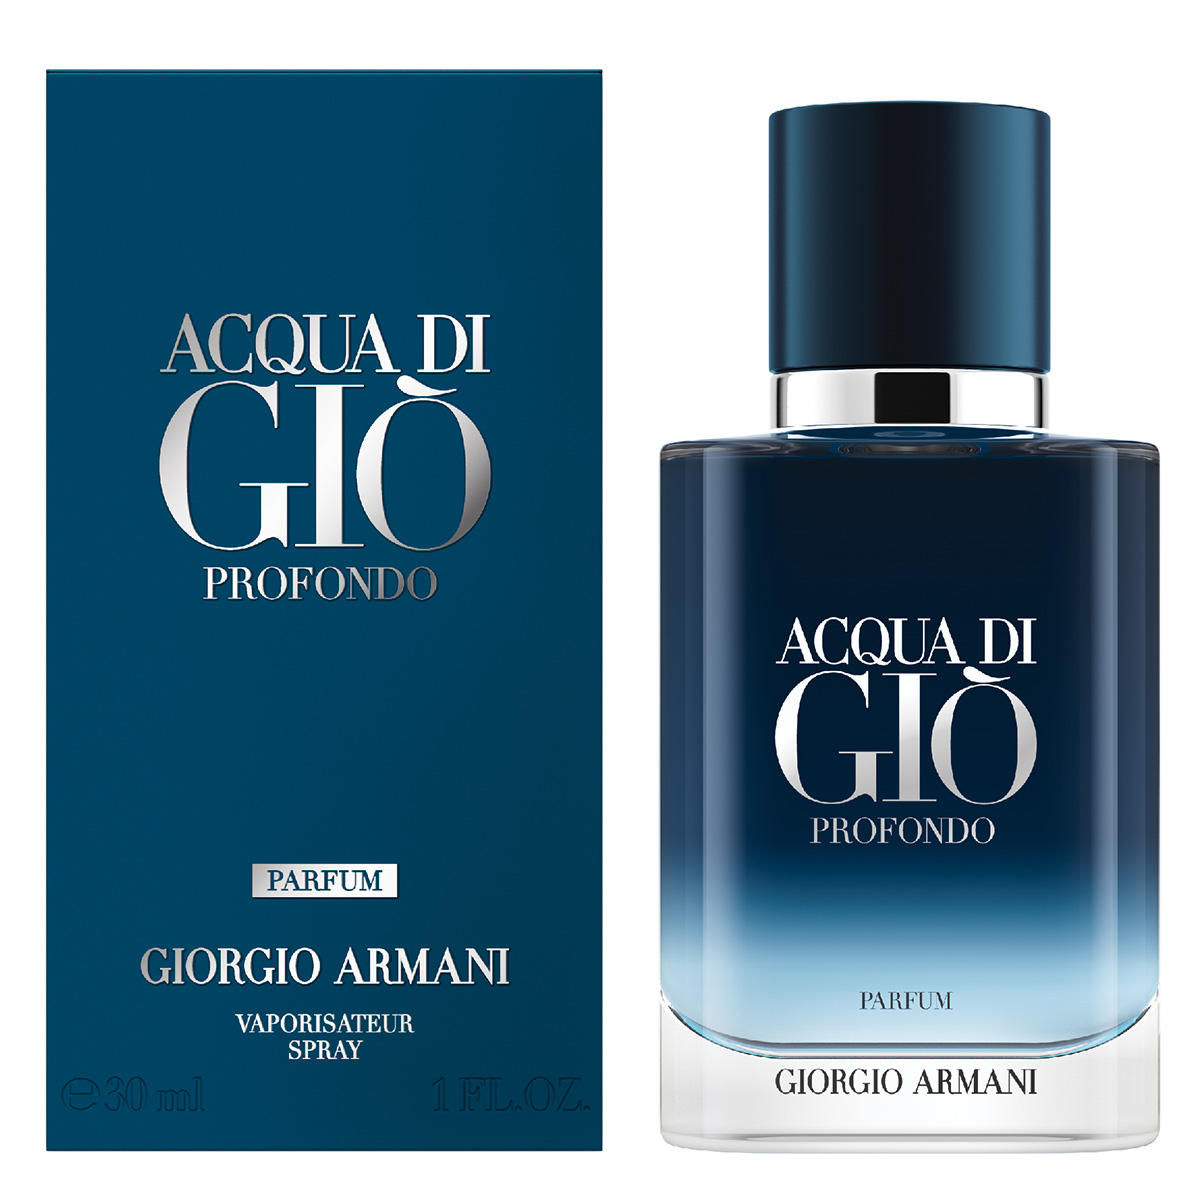 Giorgio Armani Acqua di Giò Profondo Parfum 30 ml - 2